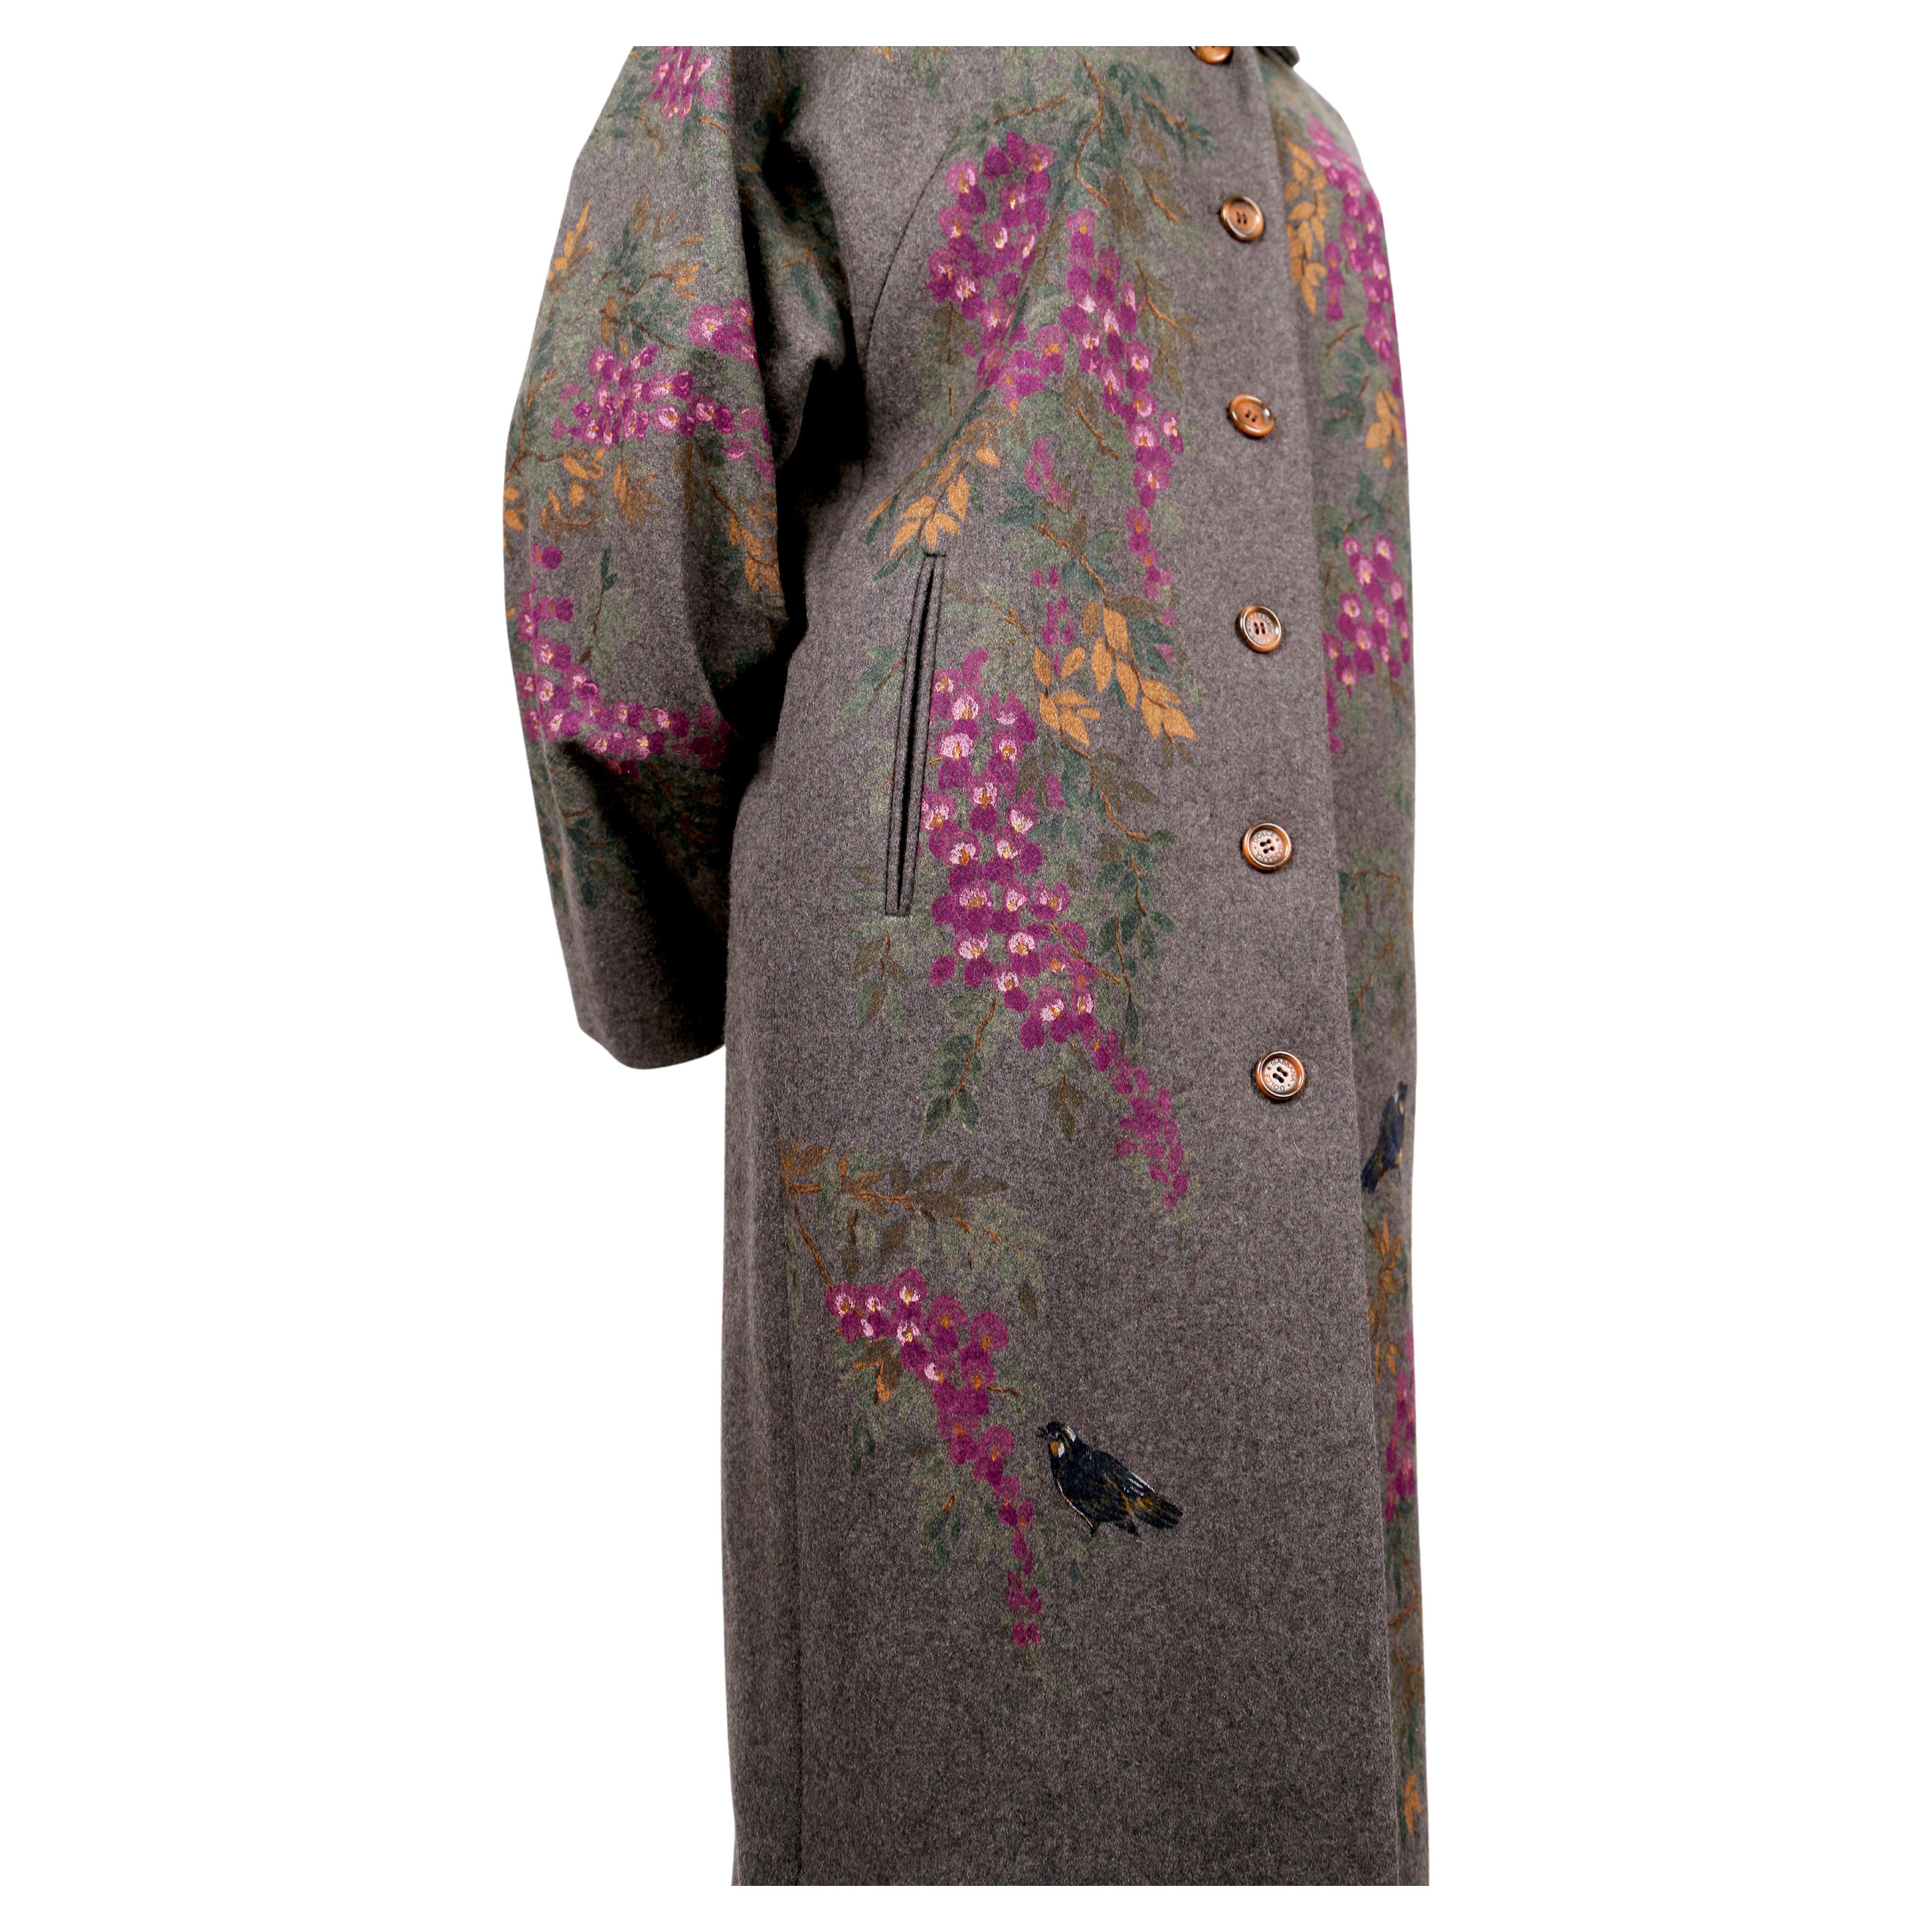 Superbe manteau en laine gris chiné peint à la main avec des motifs de fleurs et d'oiseaux, conçu par Dolce & Gabbana et datant de l'automne 1998. Ce manteau a la forme d'un manteau d'opéra des années 1920, avec un col cranté et des manches